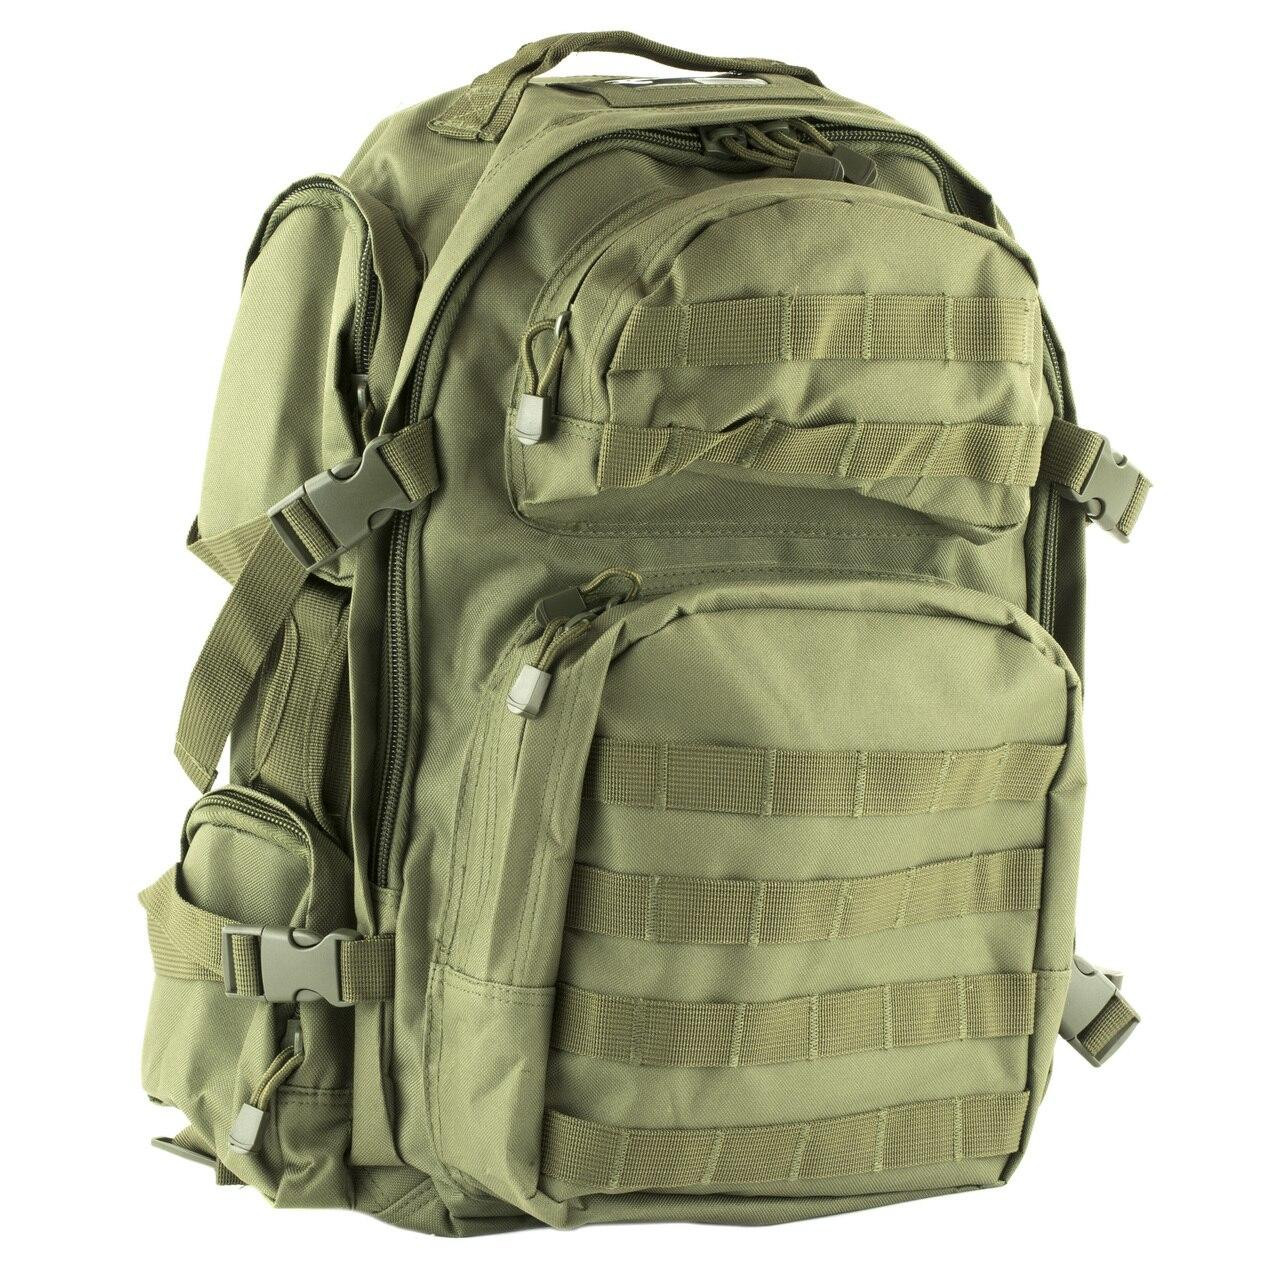 NCSTAR Ncstar Vism Tactical Backpack Grn 814108014131